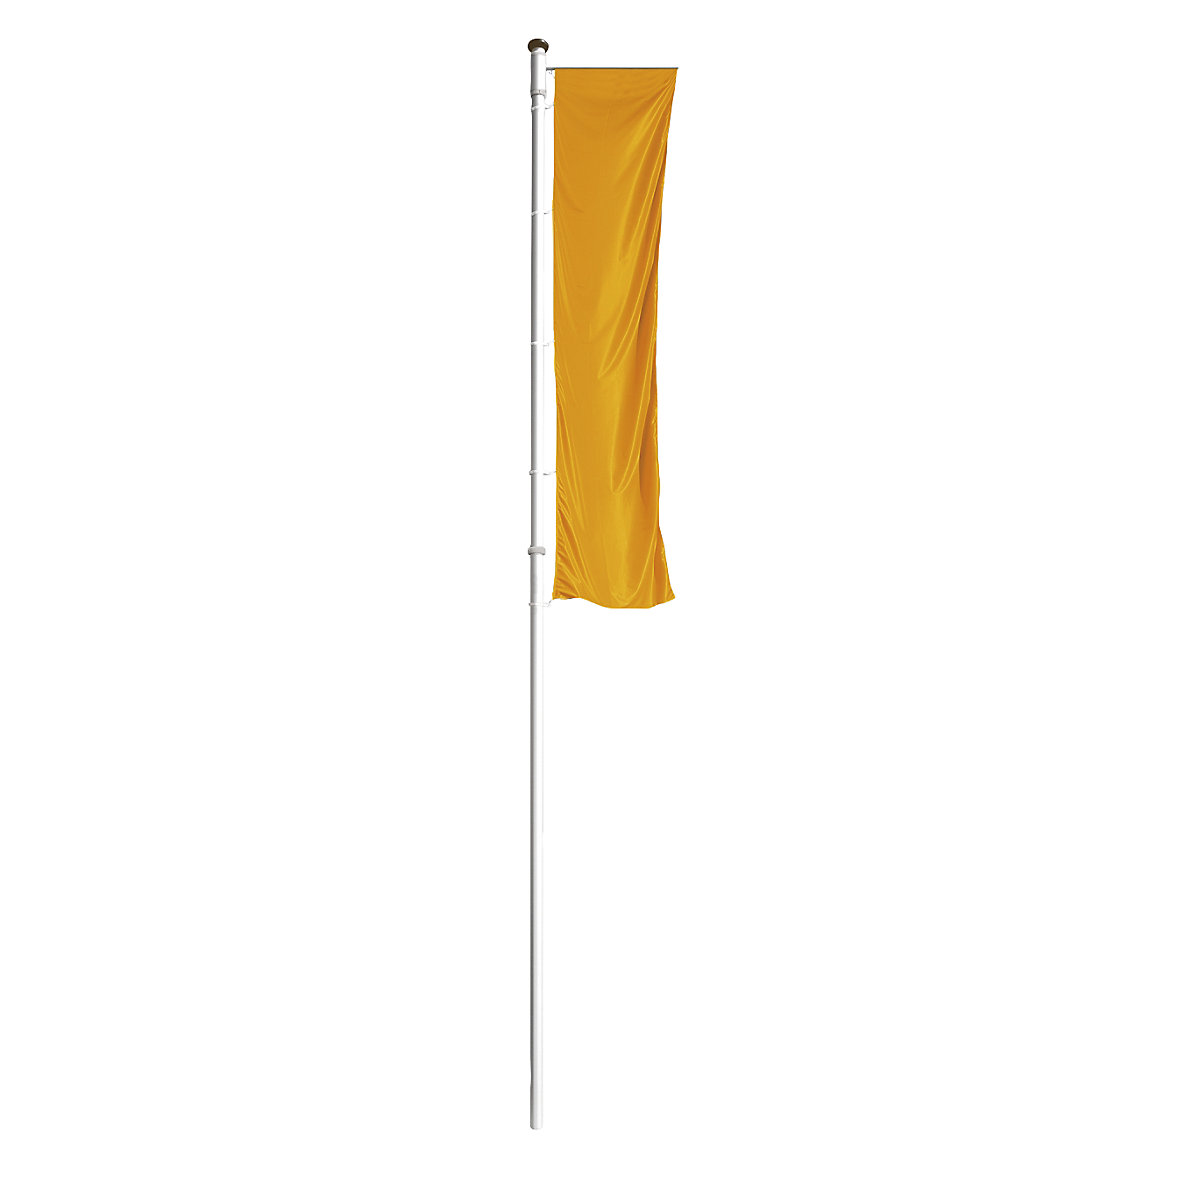 Mannus – Mastro de bandeira em alumínio PRESTIGE, com braço, altura acima do solo 8 m, Ø 100 mm